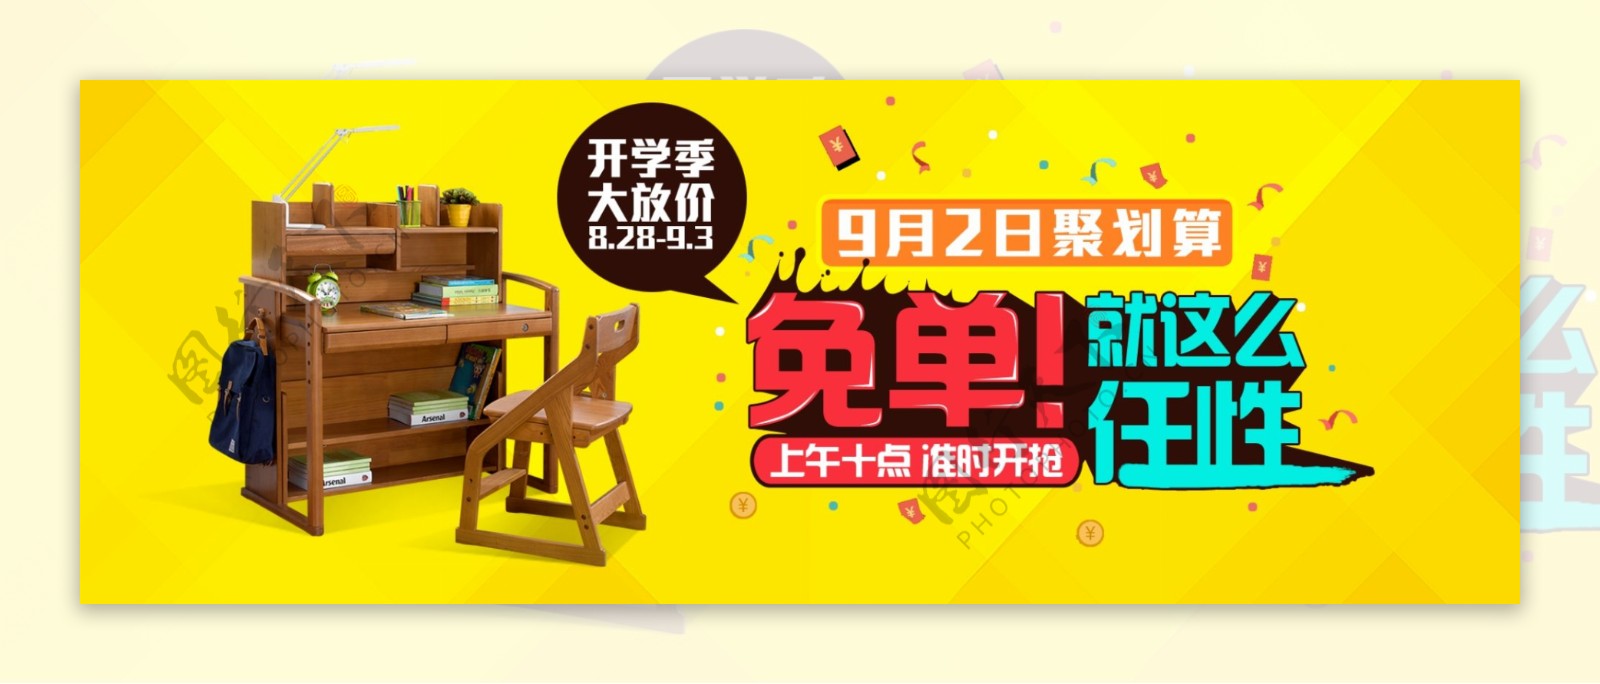 儿童家具桌子活动促销海报banner